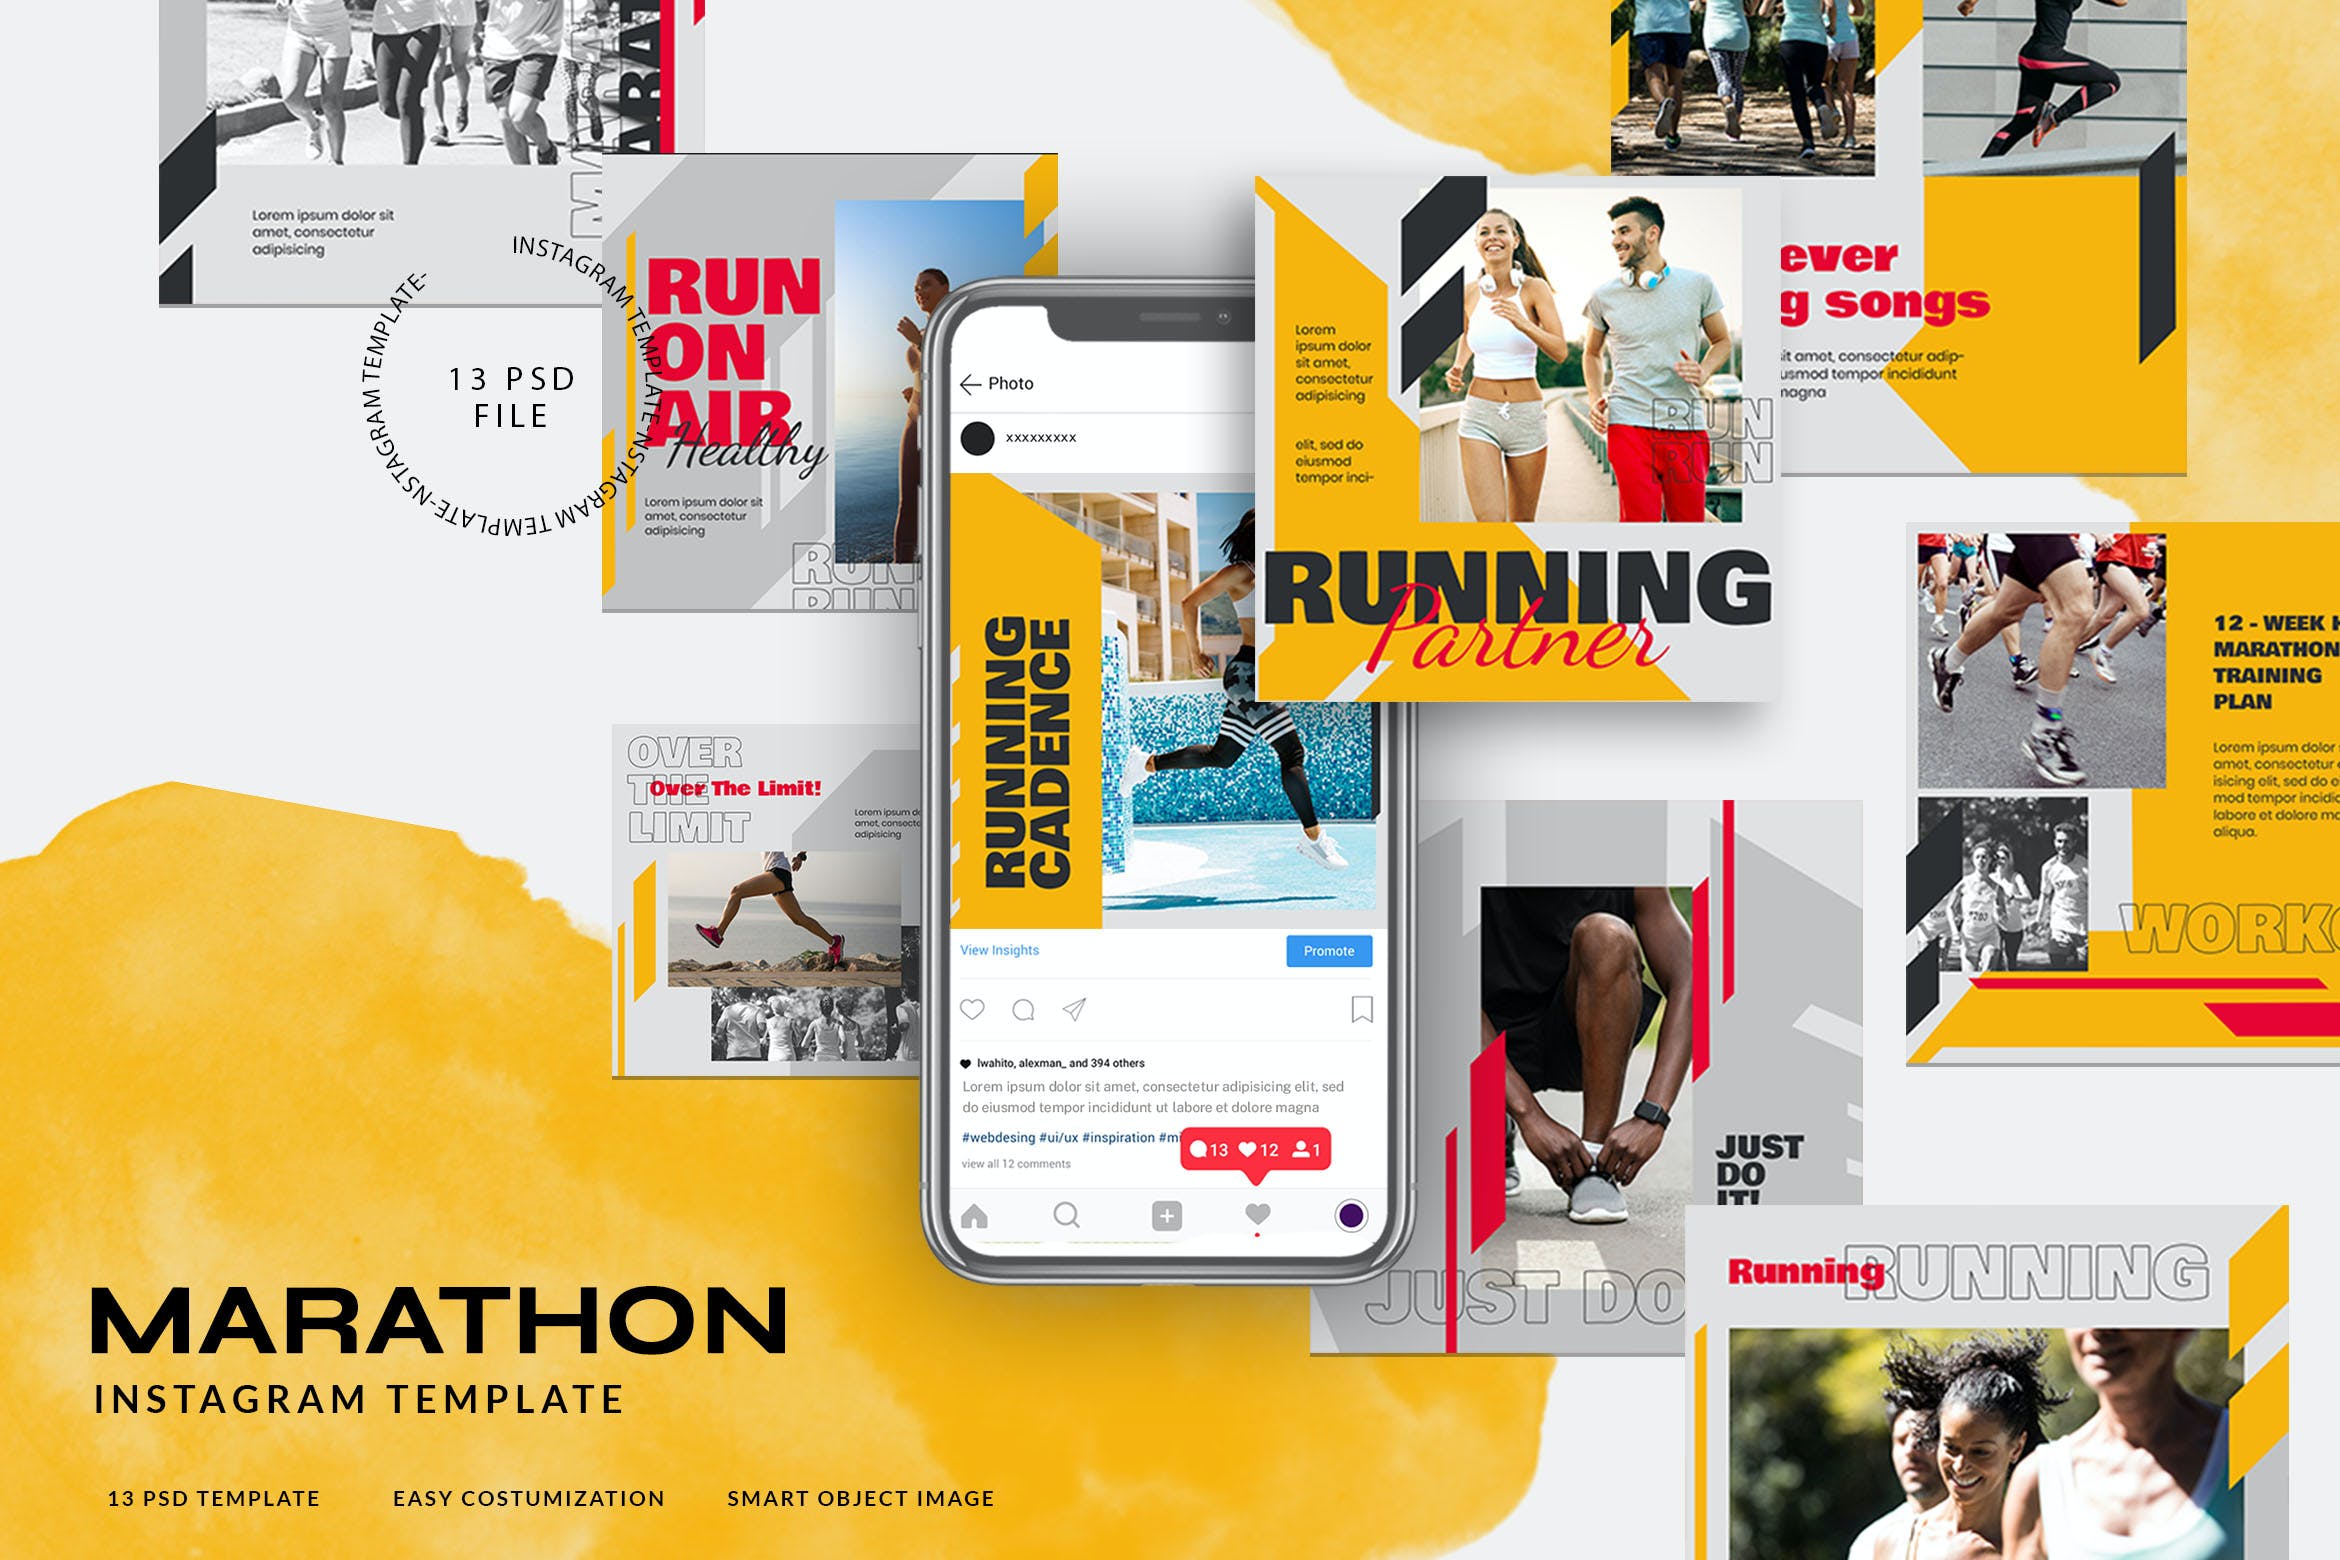 跑步 马拉松 运动Instagram故事社交贴图素材 Sport Instagram Stories for Marathon or Running设计素材模板